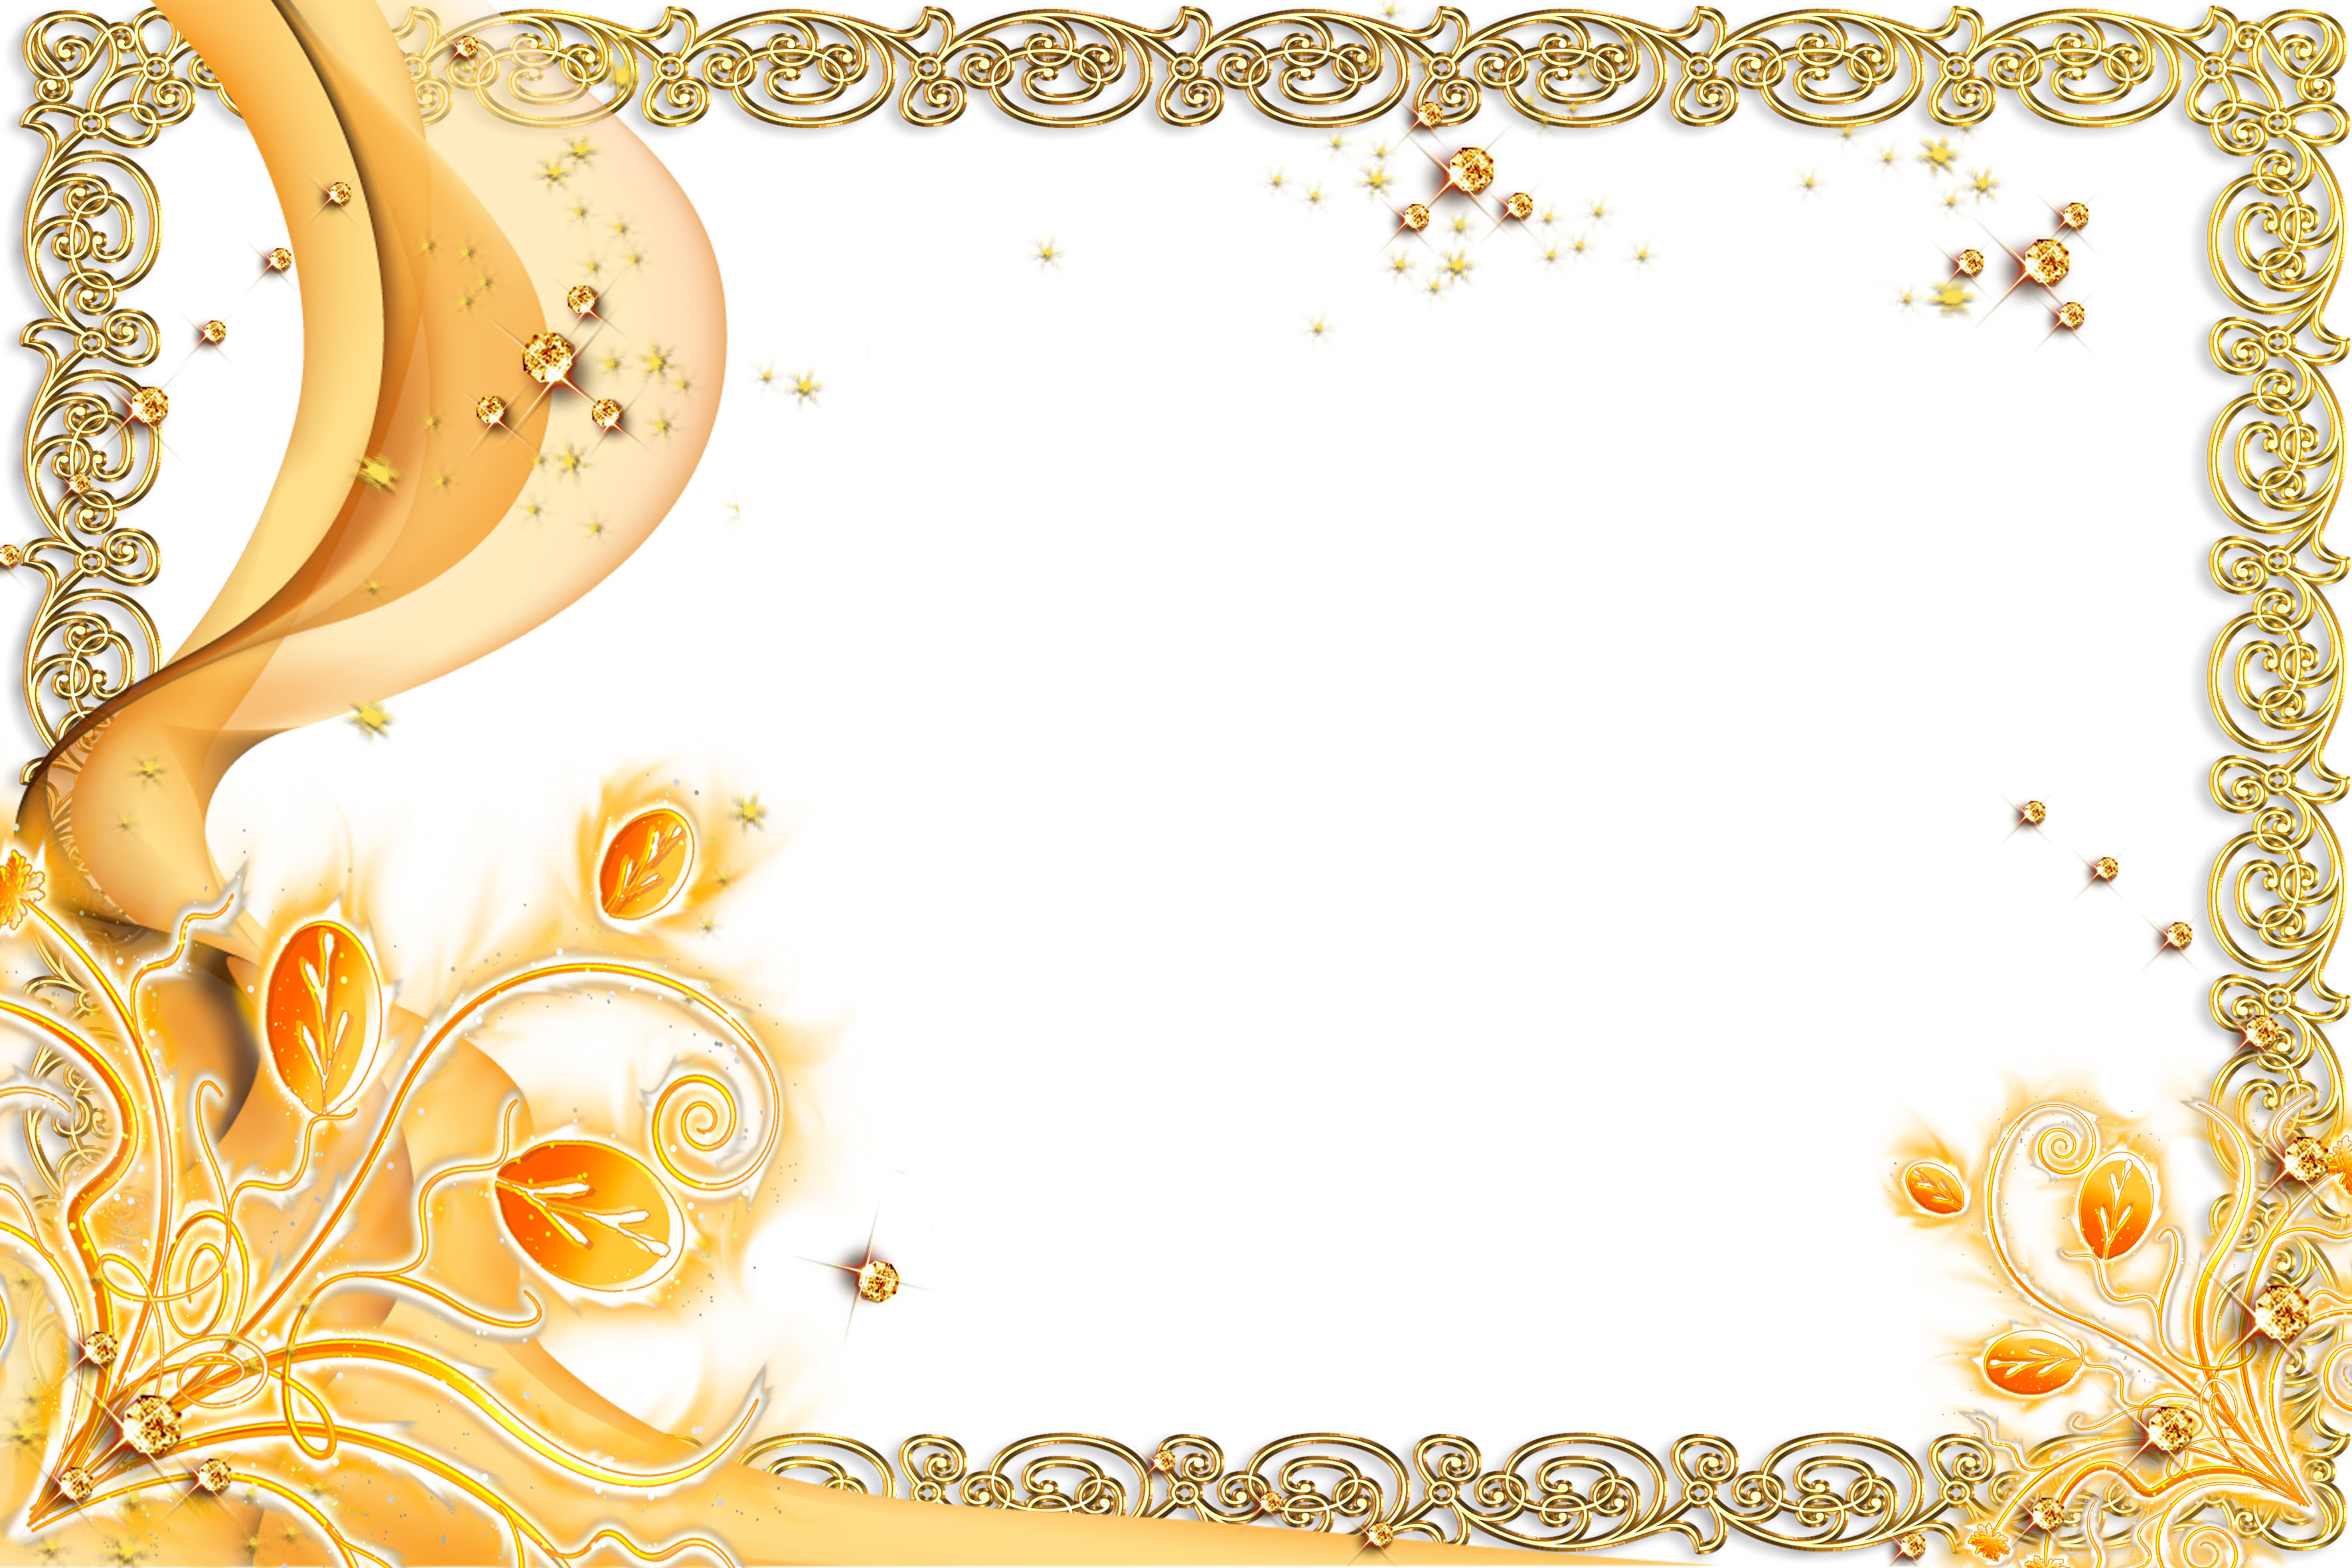 壁紙 背景イラスト 花のフレーム 外枠 No 168 オレンジ ゴールド 宝石